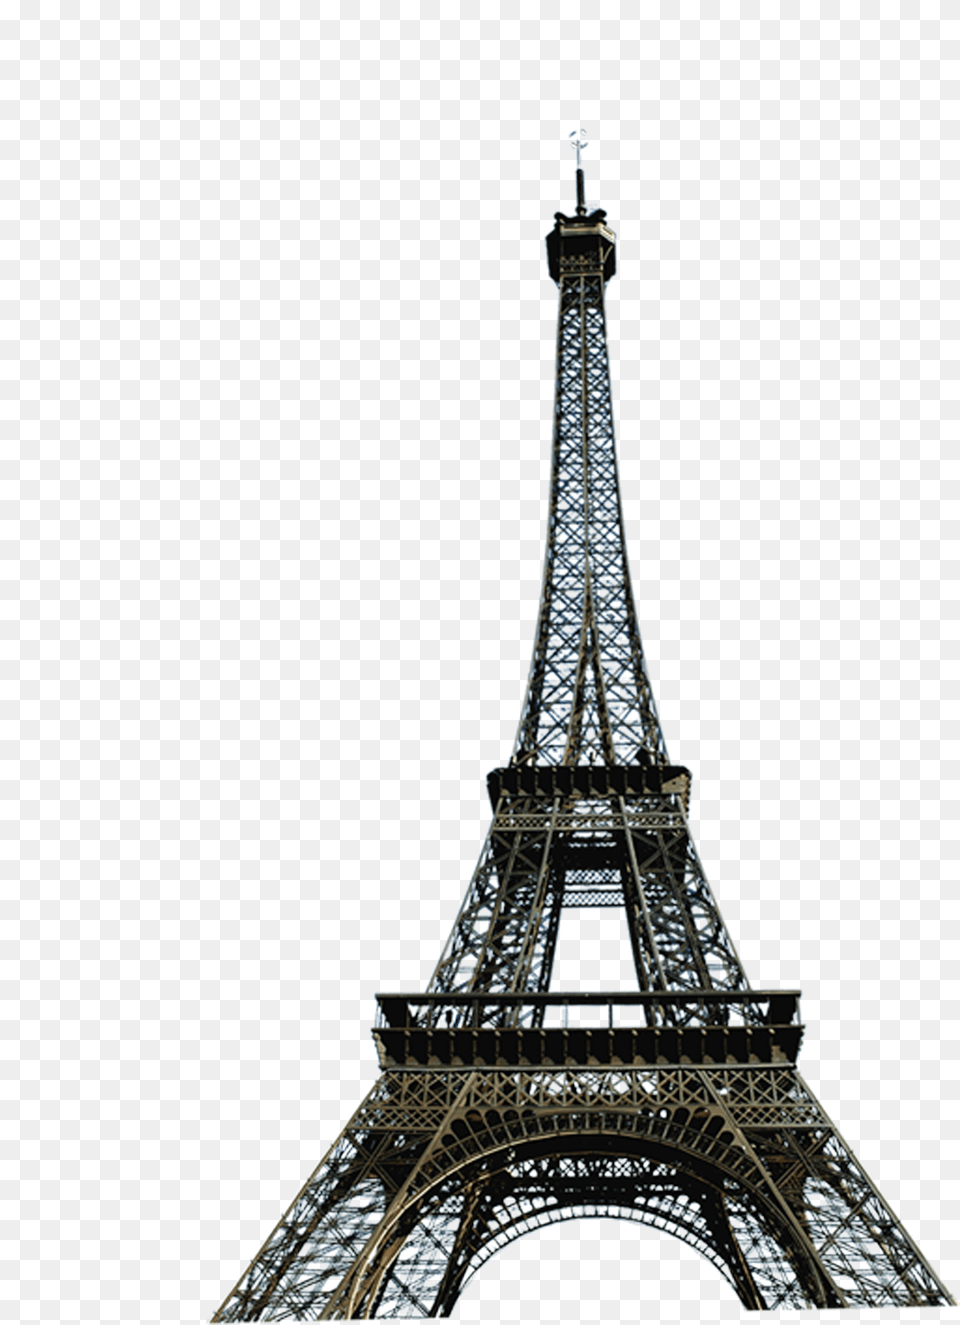 Paris Eiffel Tower Clip Art Paris Eiffel Tower, Architecture, Building, Eiffel Tower, Landmark Png Image